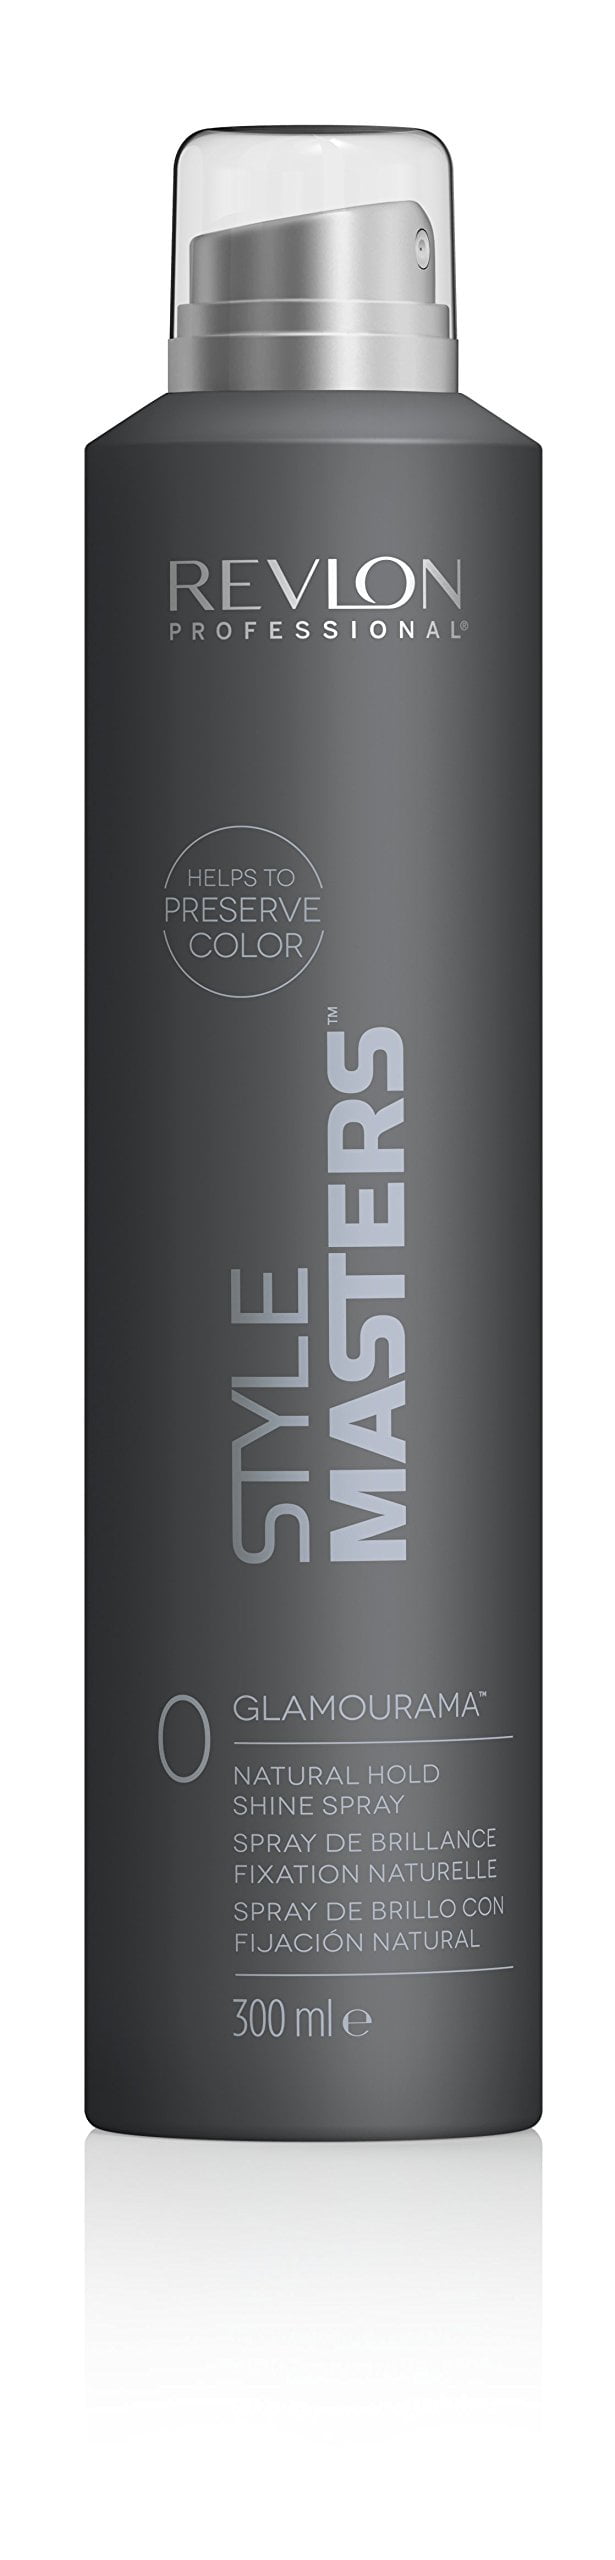 frugthave strække morgue Revlon Style Masters 0 Glamourama Natural Hold Shine Spray - 10.14 oz -  Walmart.com